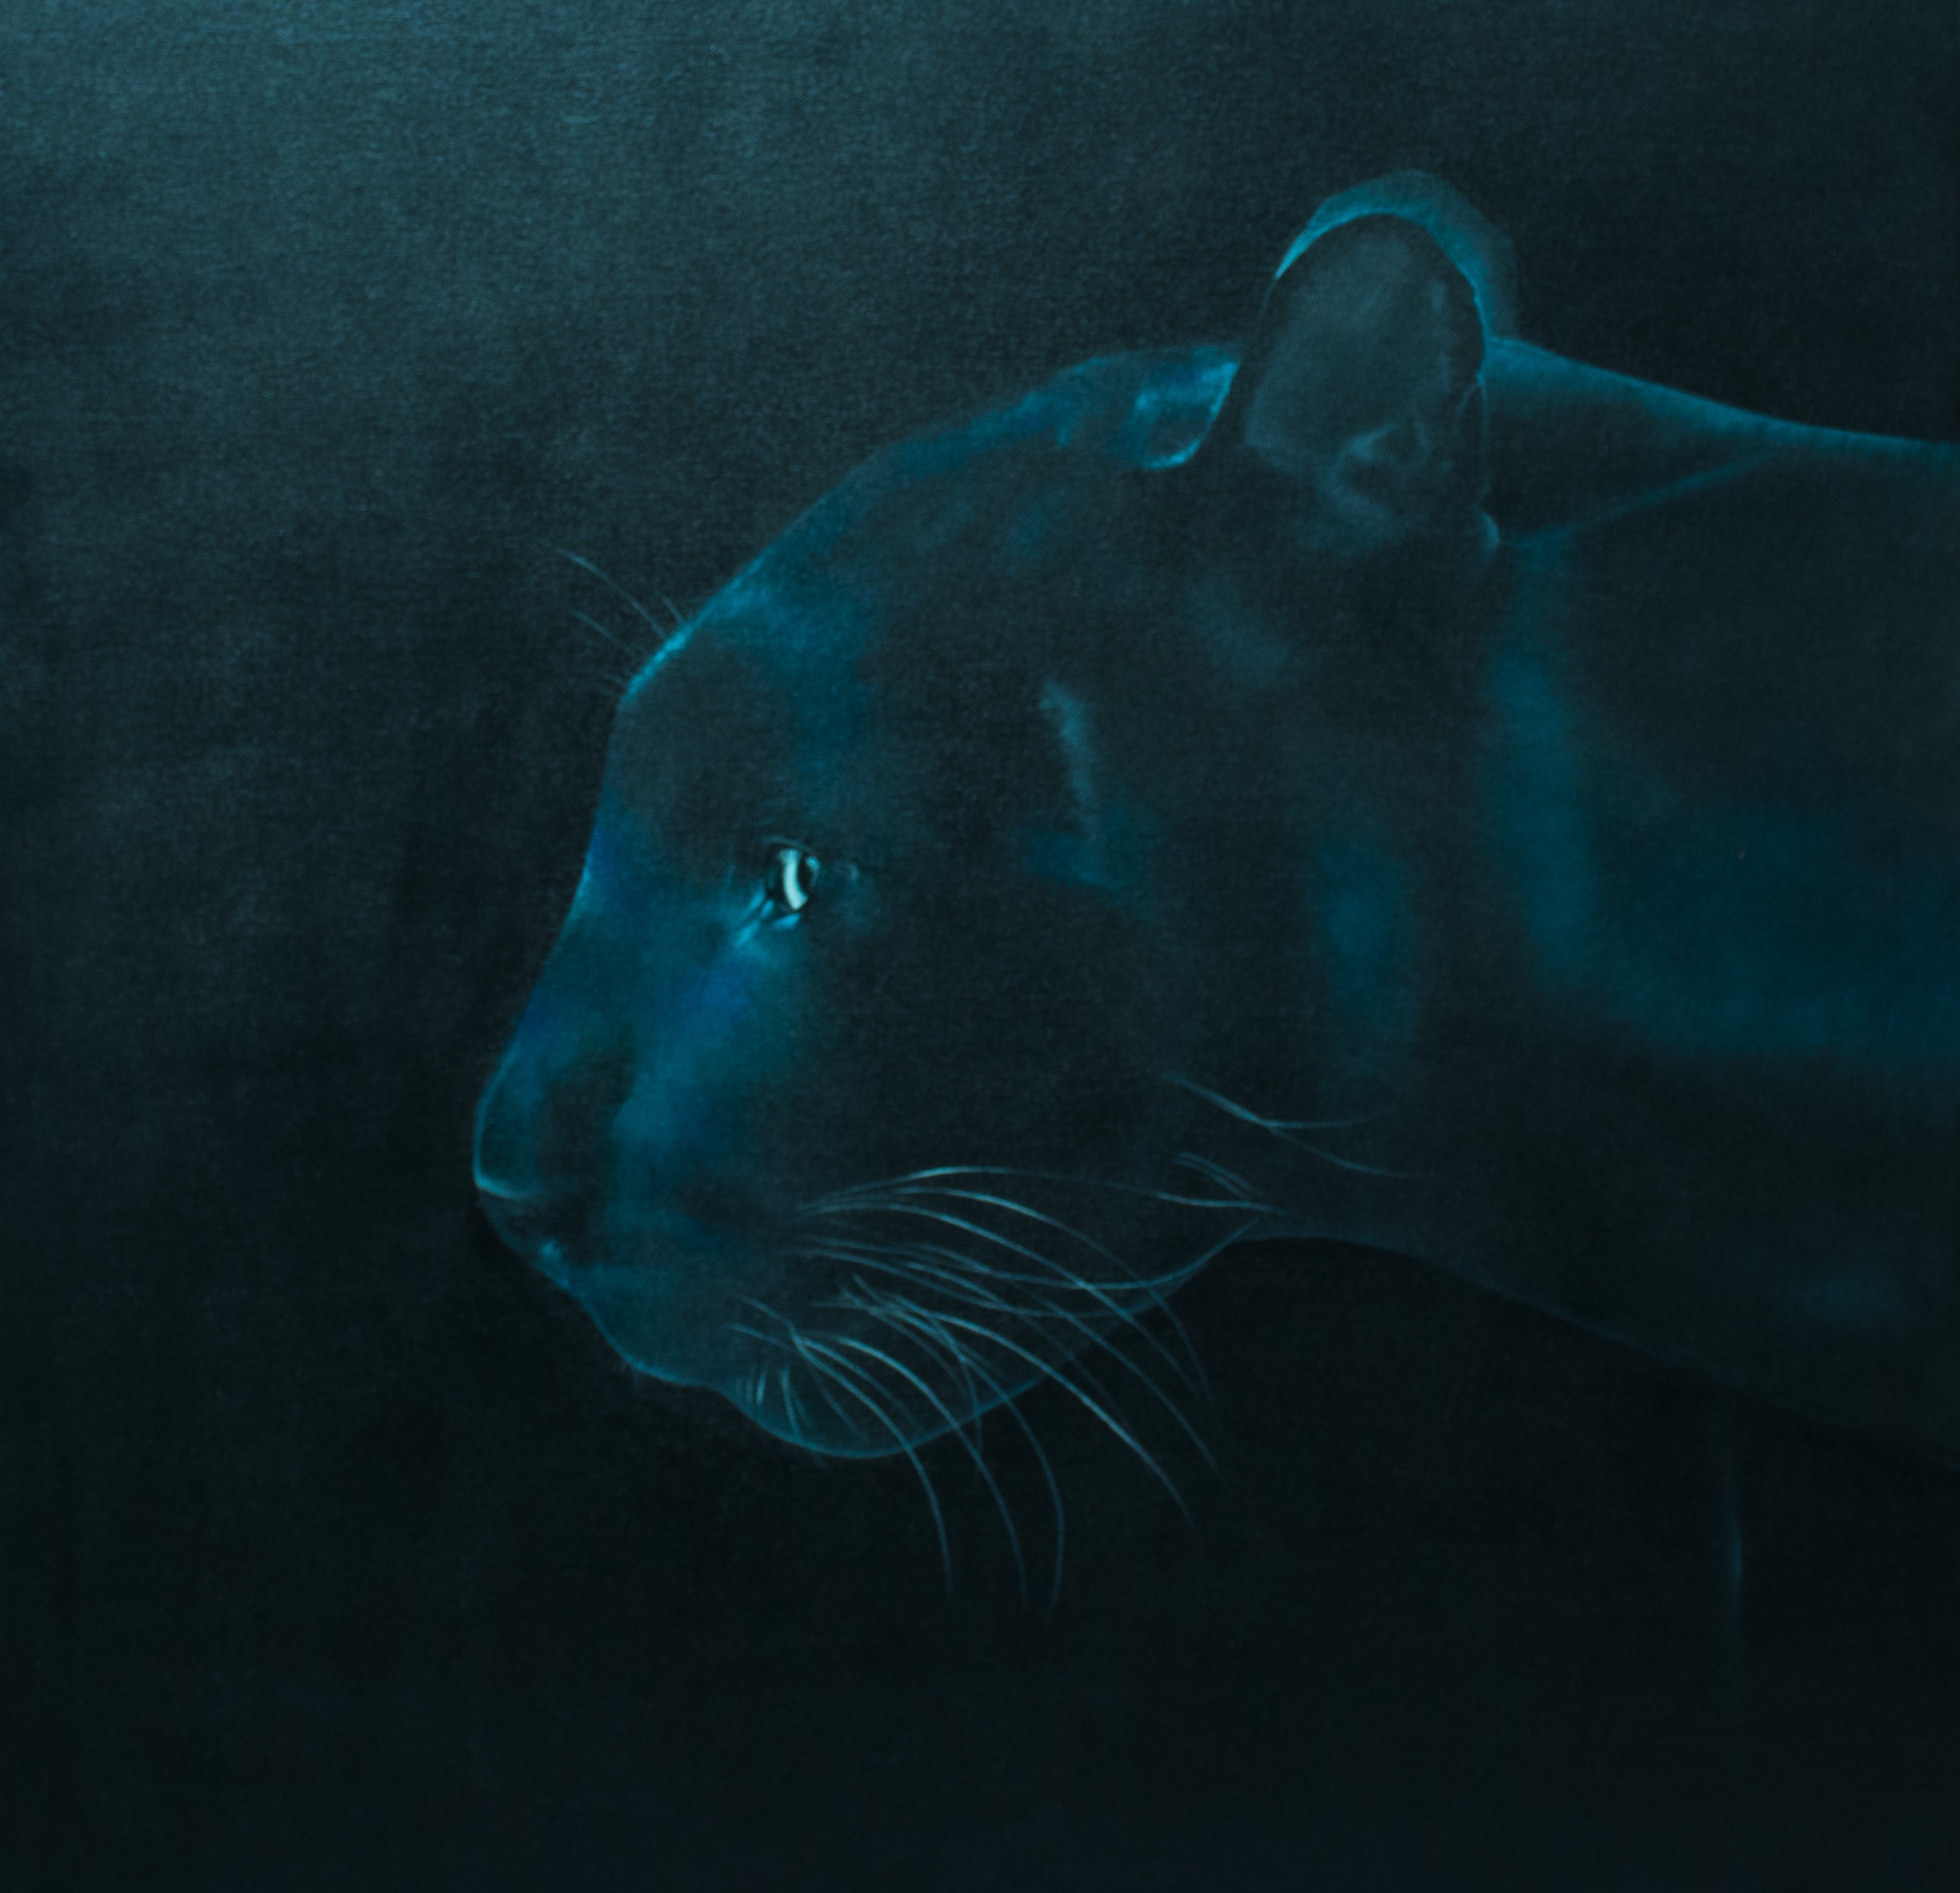 Black panther by Kasuni Rathnayaka